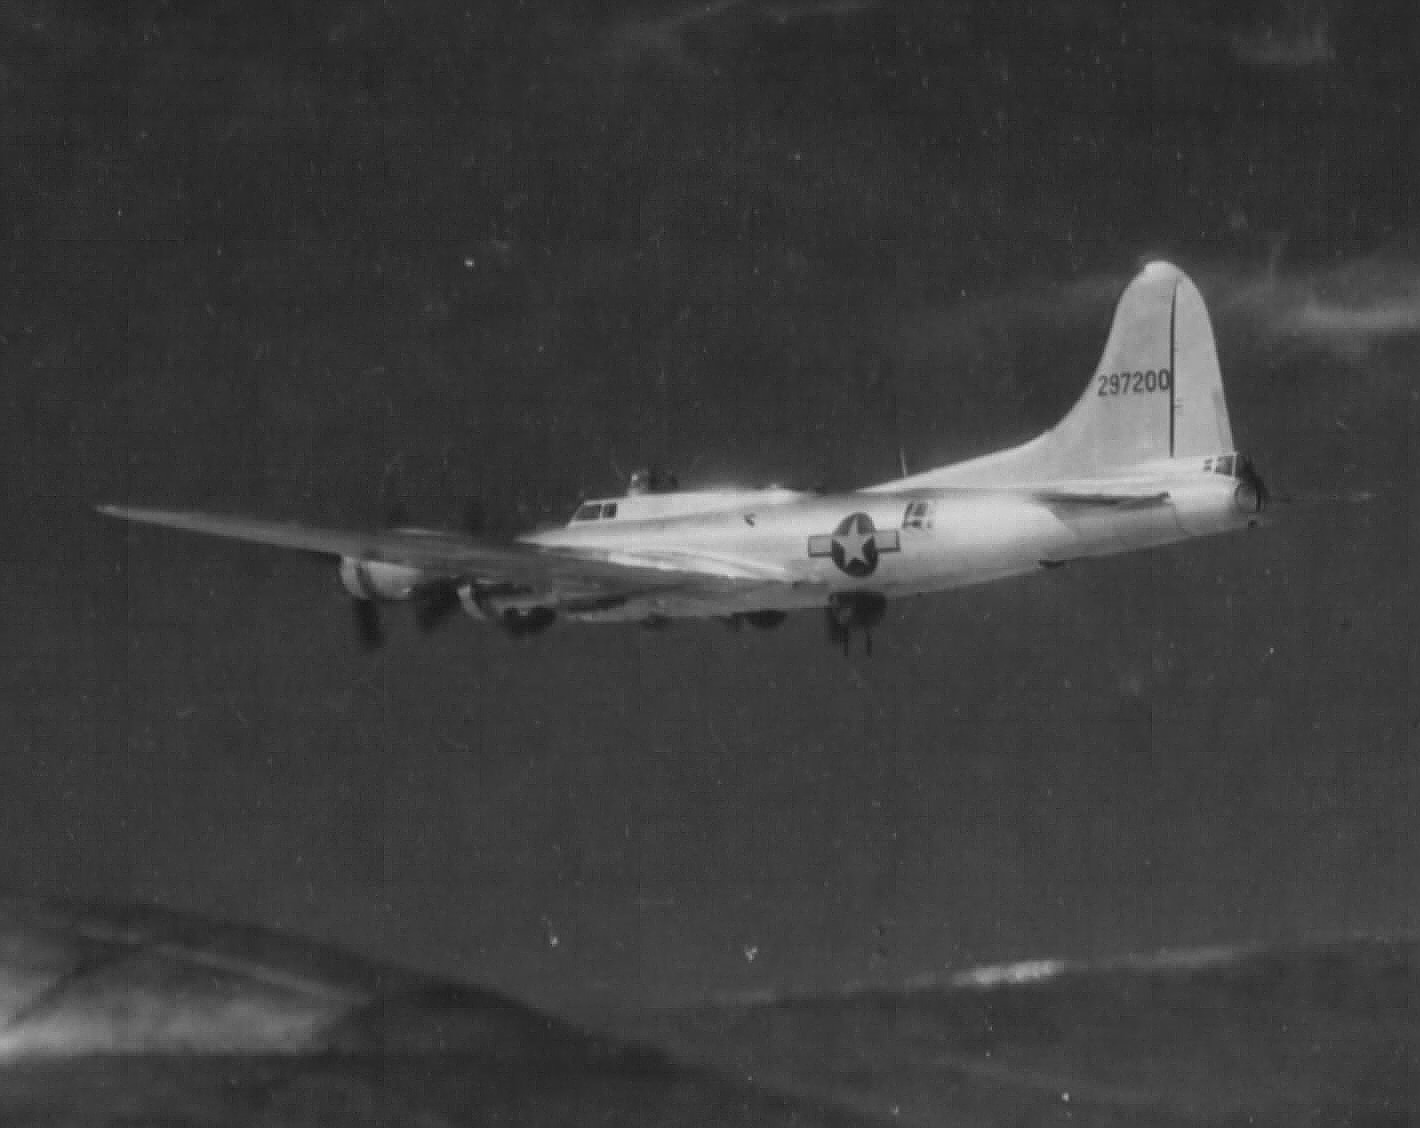 B-17 #42-97200